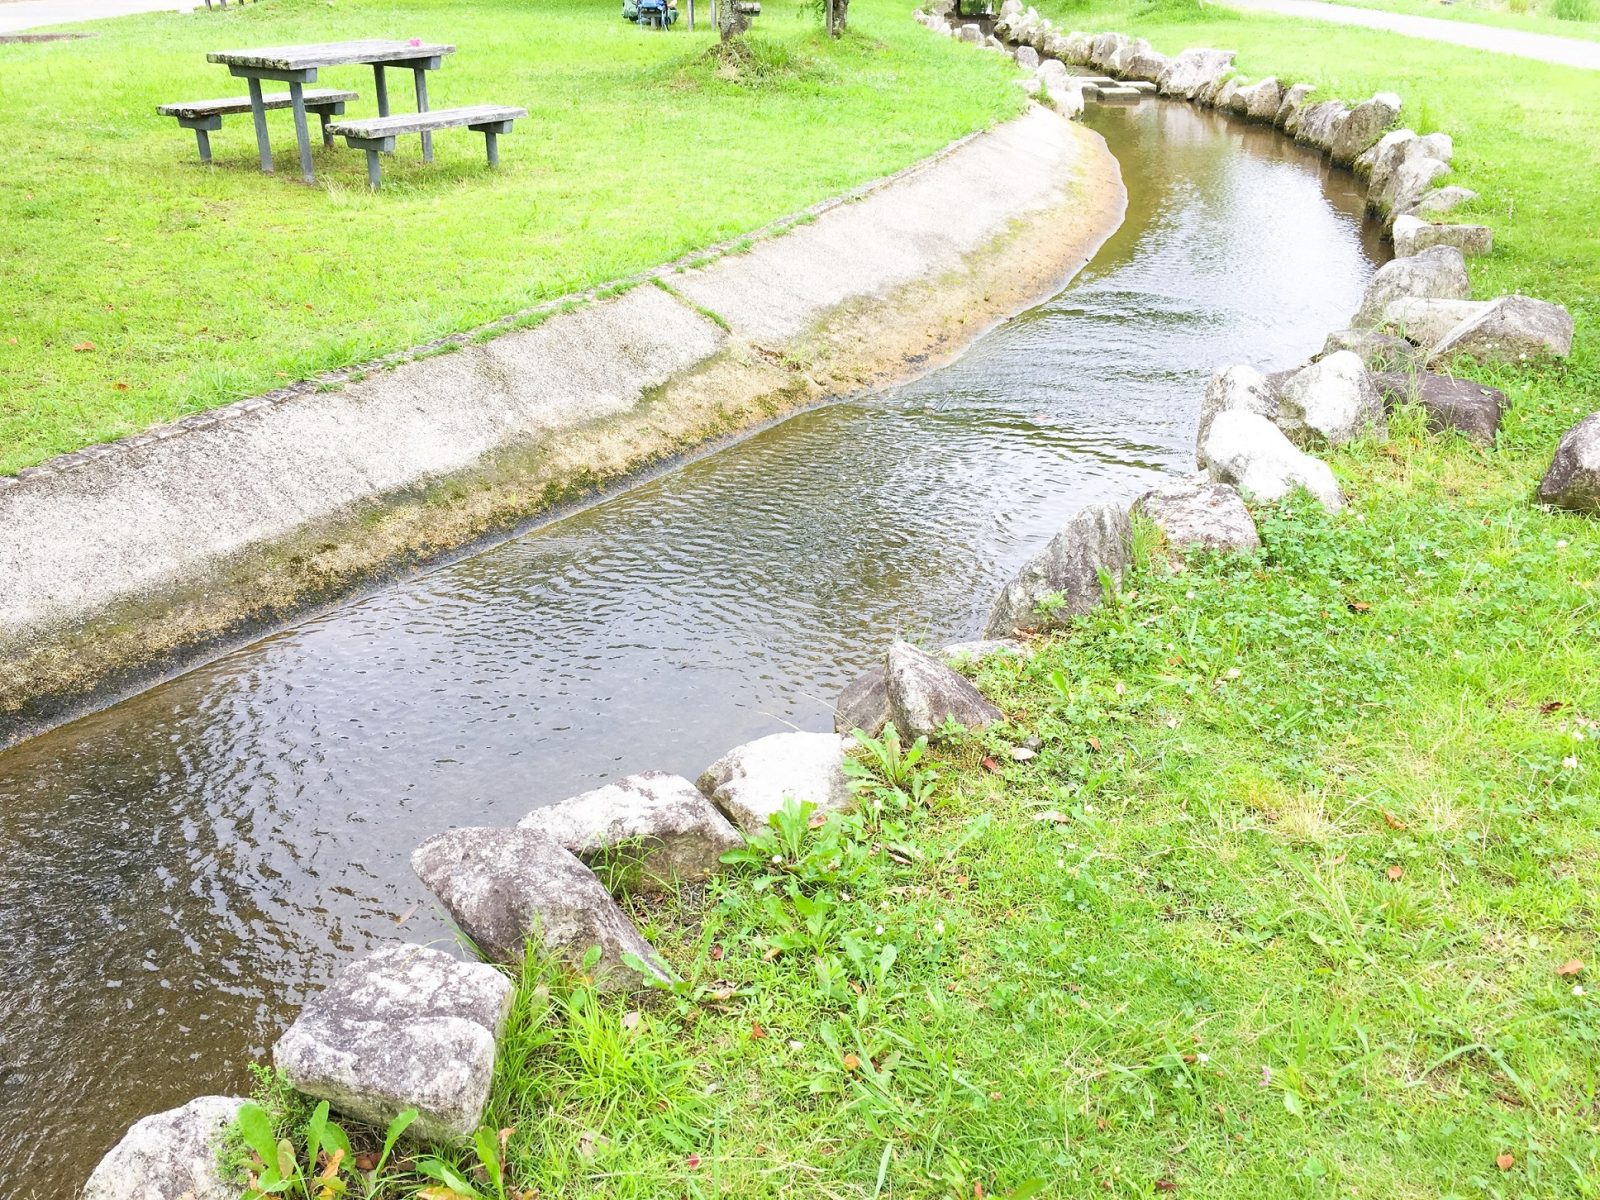 川遊びと水生生物観察ができる和邇公園 大津市 リビング滋賀 女性のための総合生活情報紙